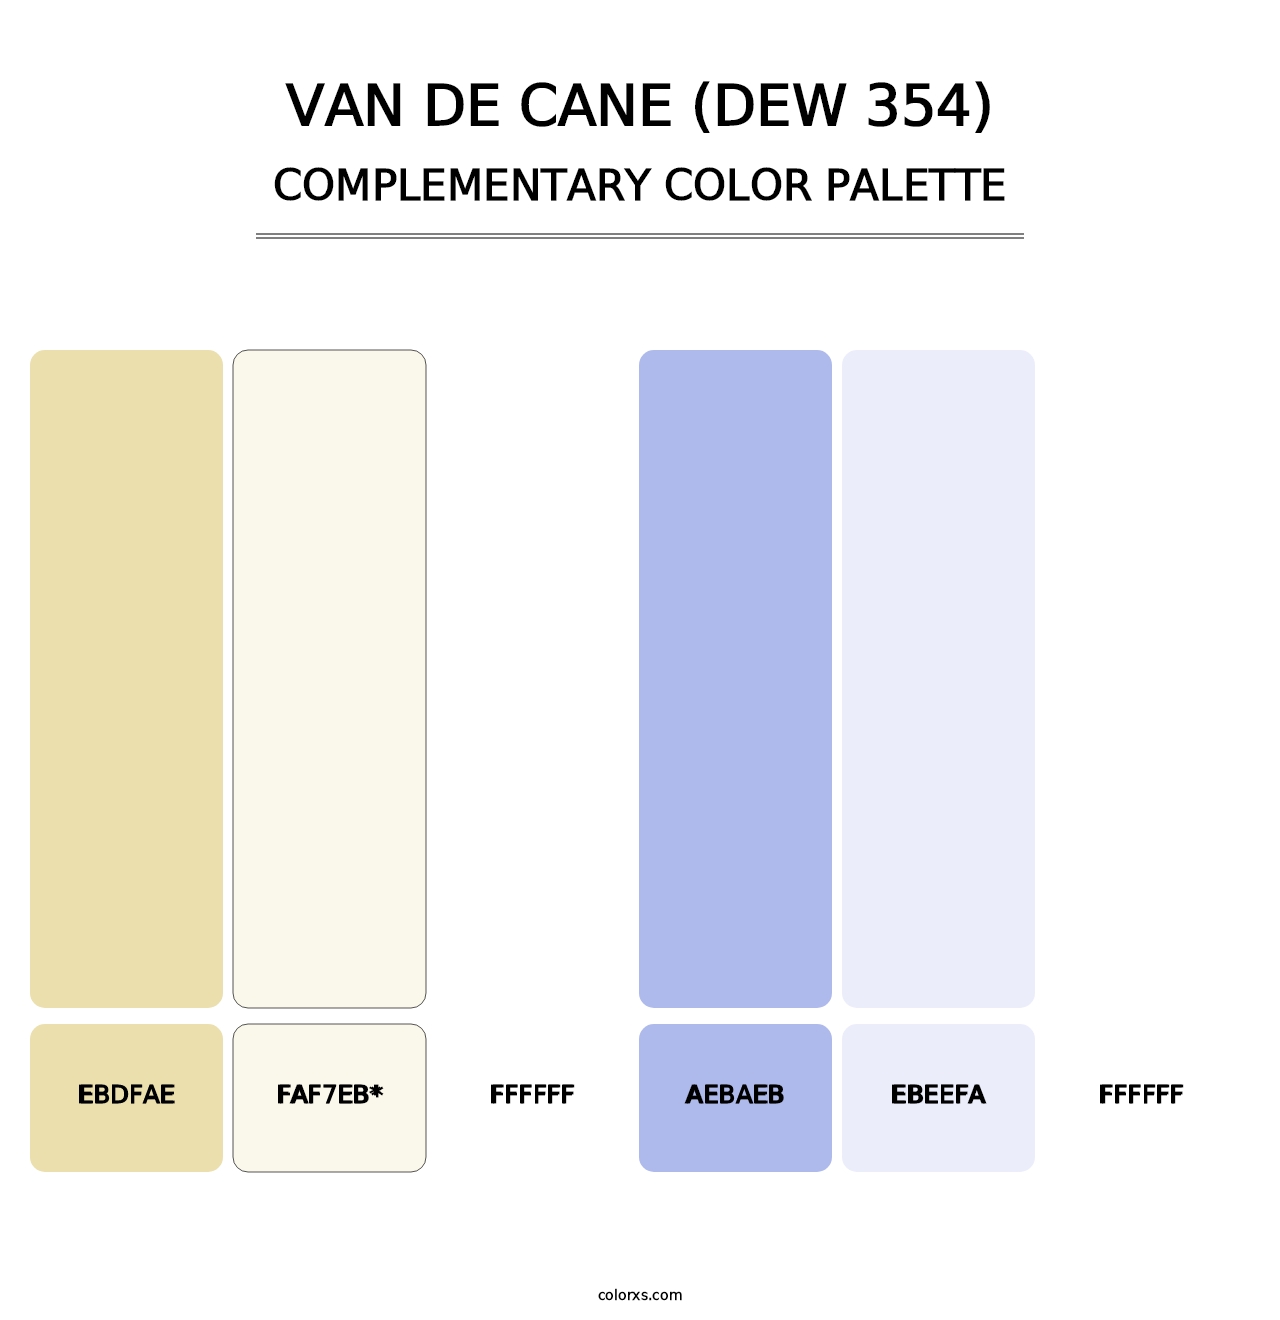 Van de Cane (DEW 354) - Complementary Color Palette